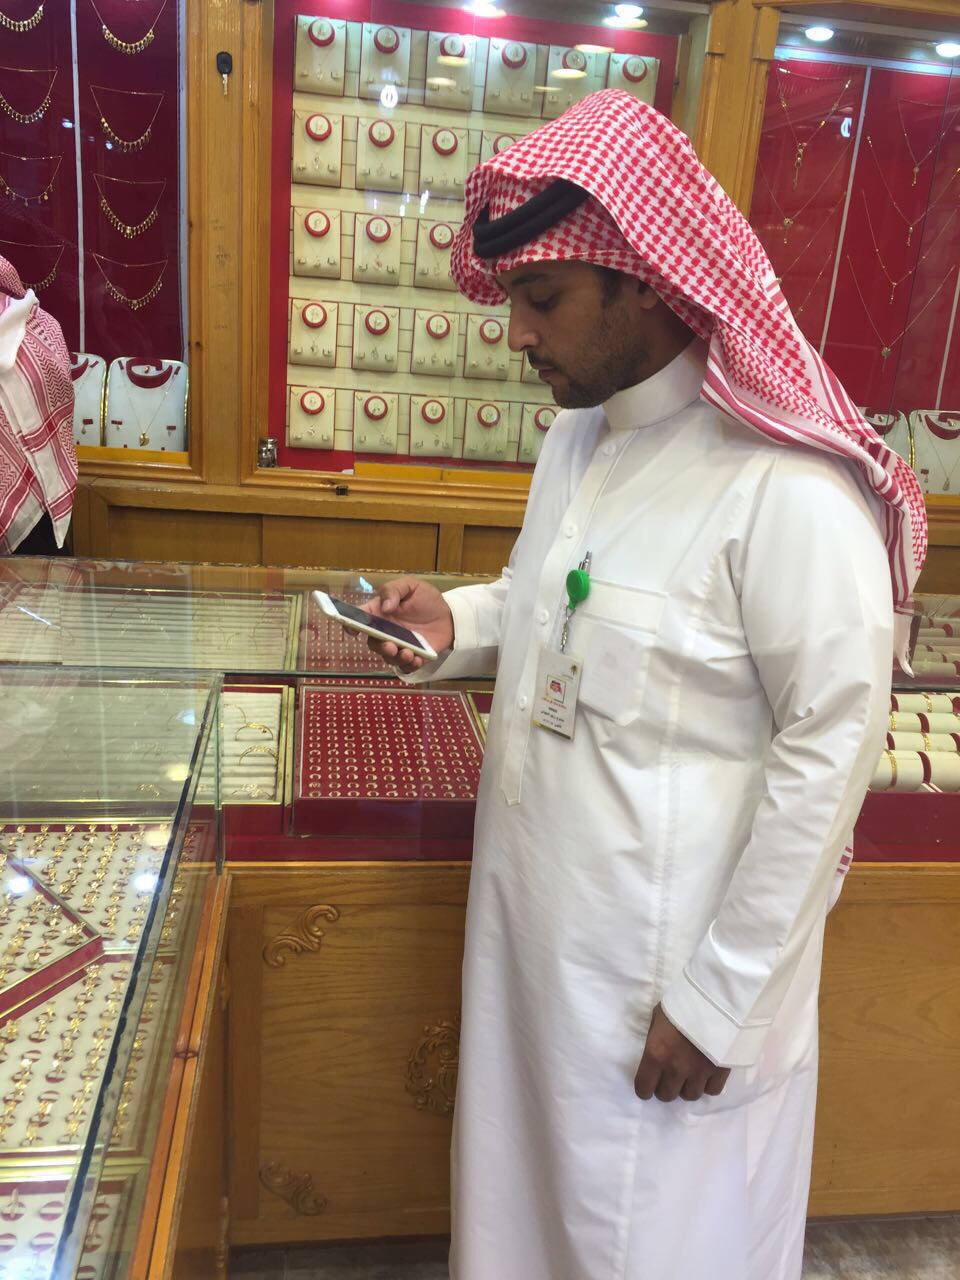 335 مخالفة لأنظمة العمل في محلات الرياض